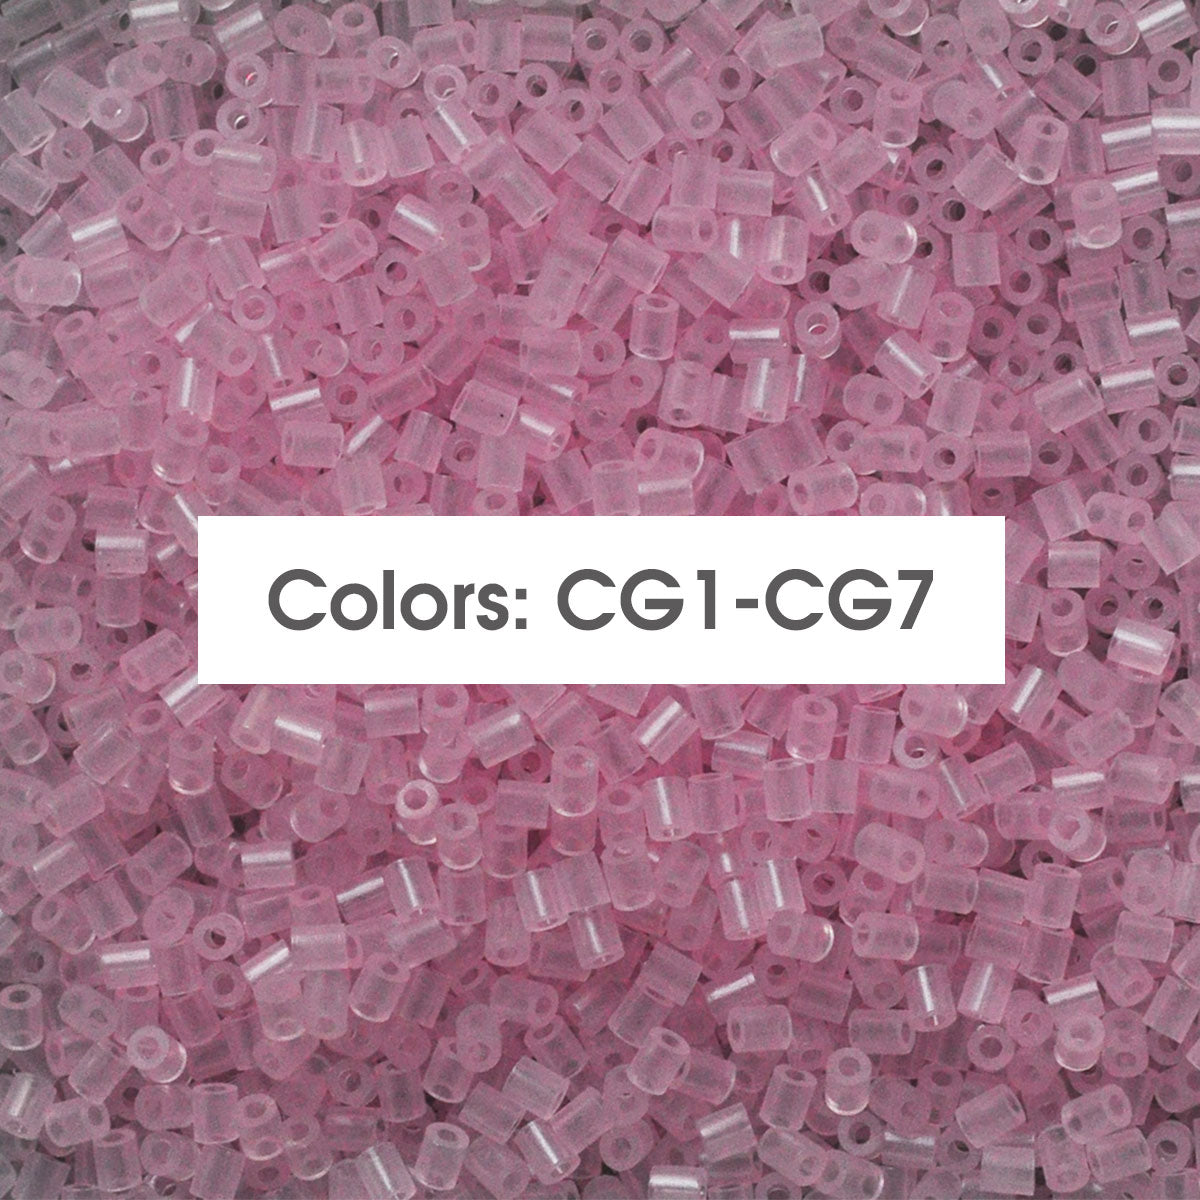 (CG1-CG7 bagliore nei colori scuri) C-500G alla rinfusa